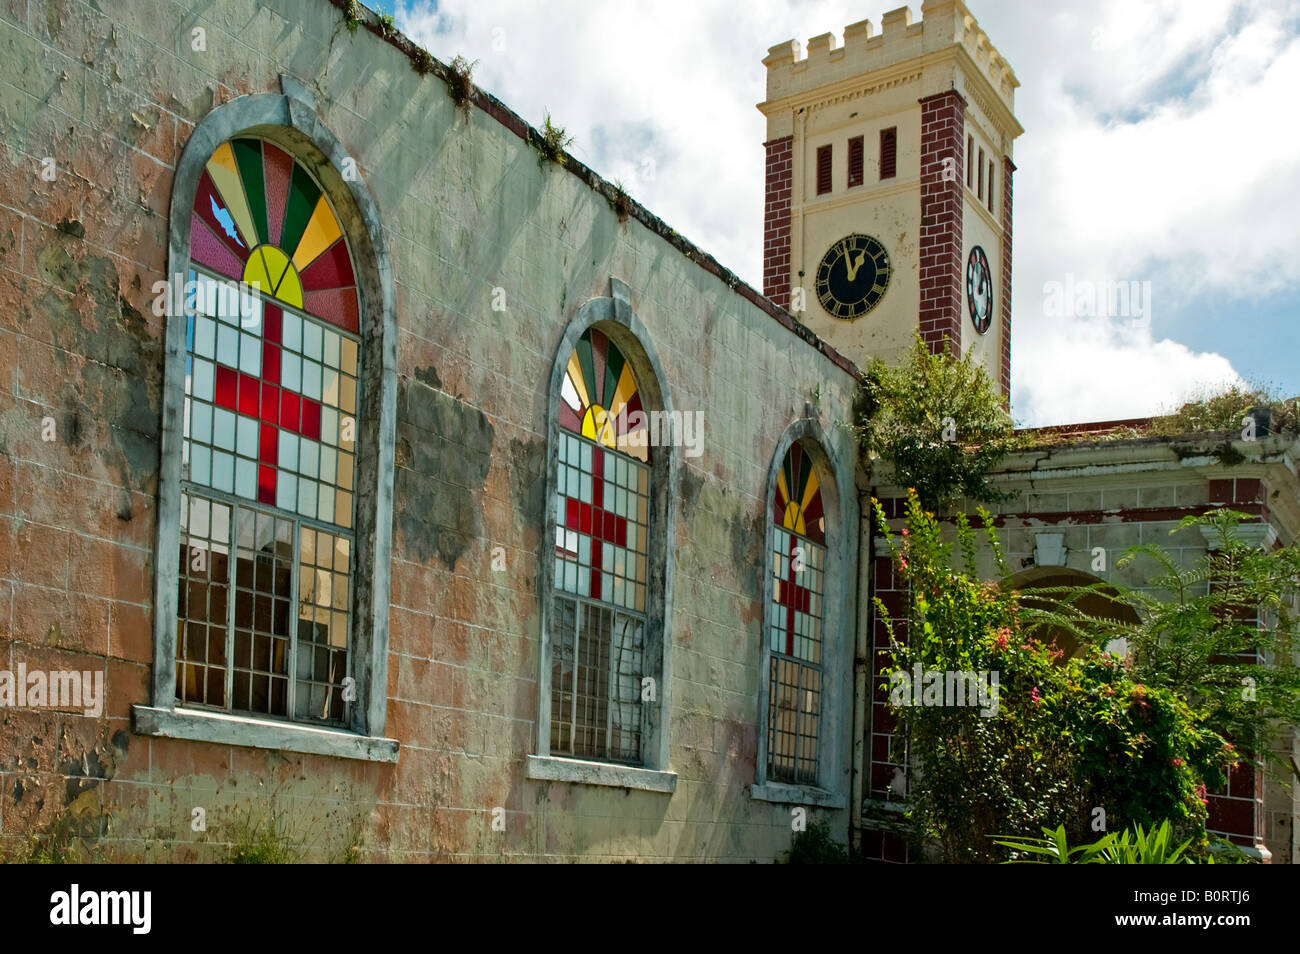 Las Vidrieras el pórtico y la Torre del Reloj de la iglesia de St George's Angican Granada gravemente dañadas por el huracán Iván Foto de stock